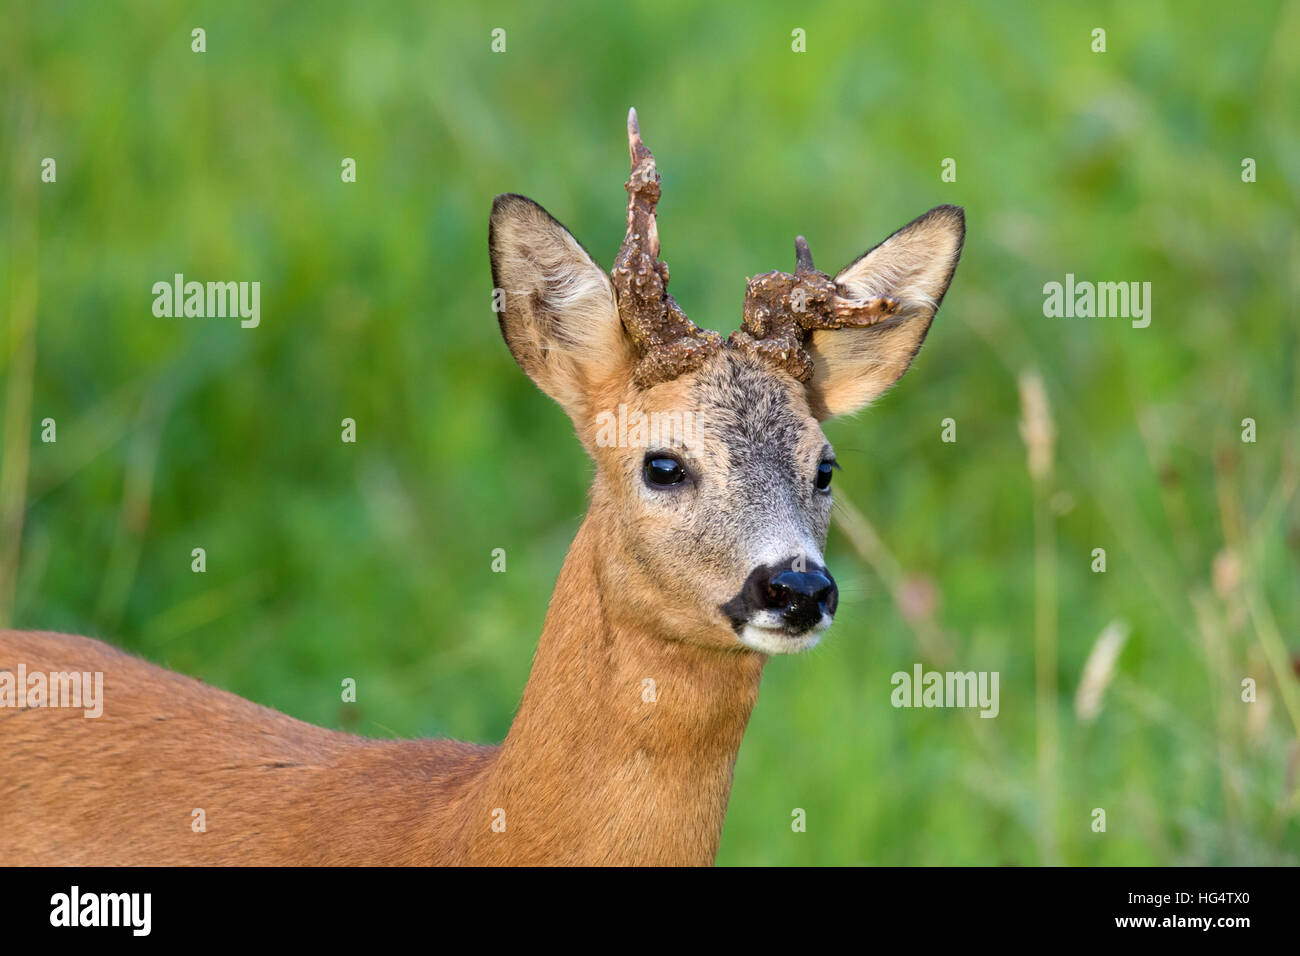 Roe deer (Capreolus capreolus) buck with two deformed antlers in field in summer Stock Photo